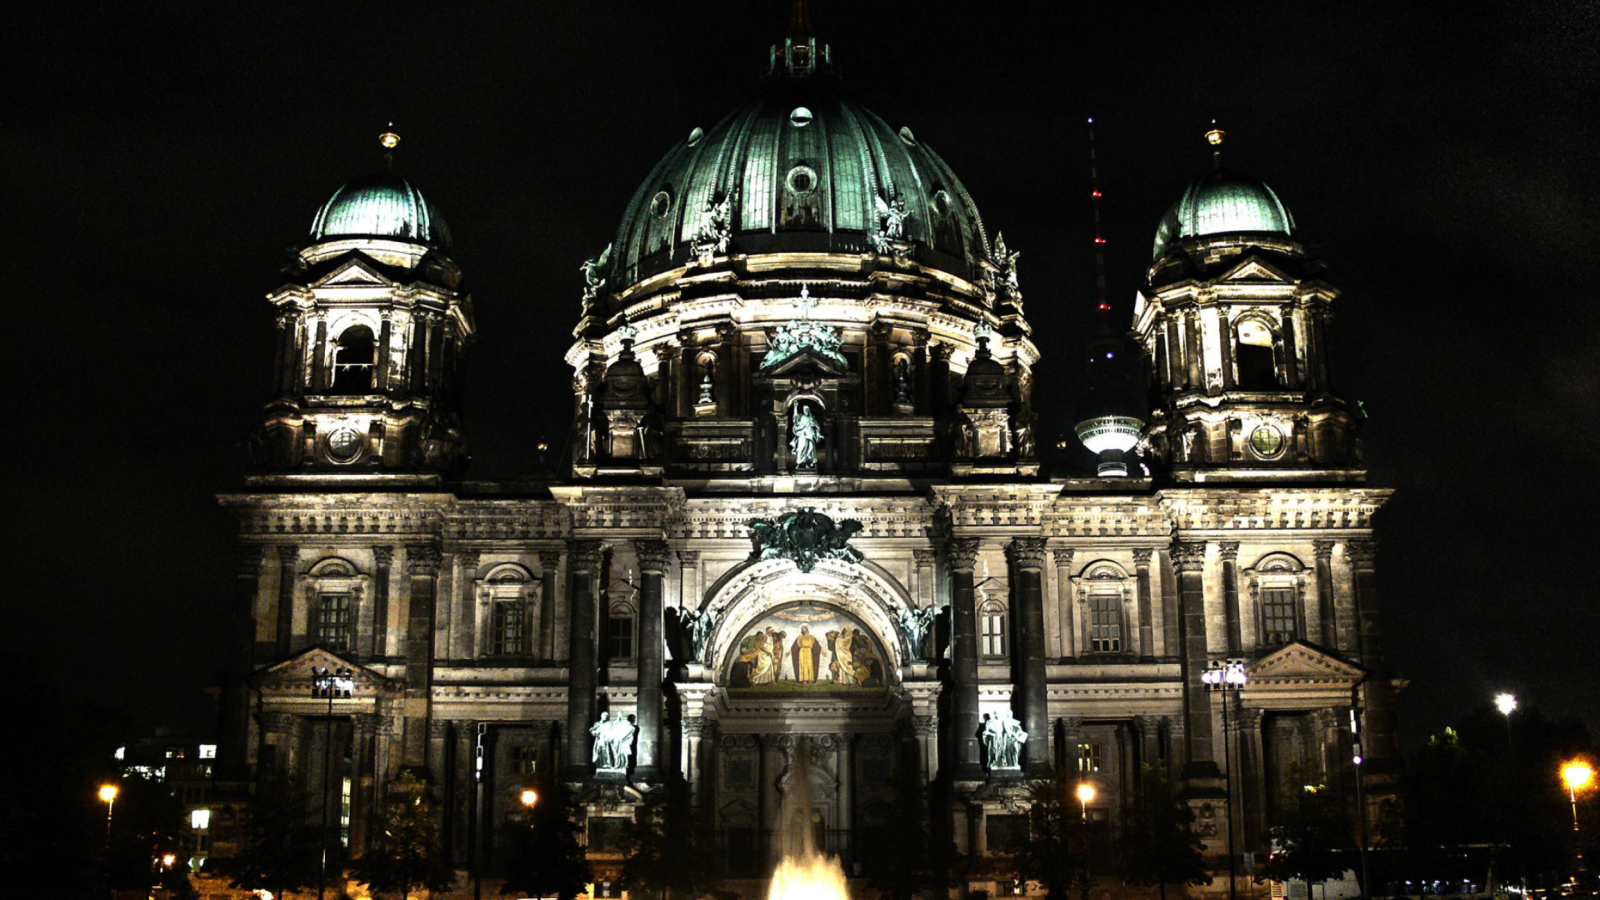 Das Berliner Dom At Night Wallpaper 1600x900